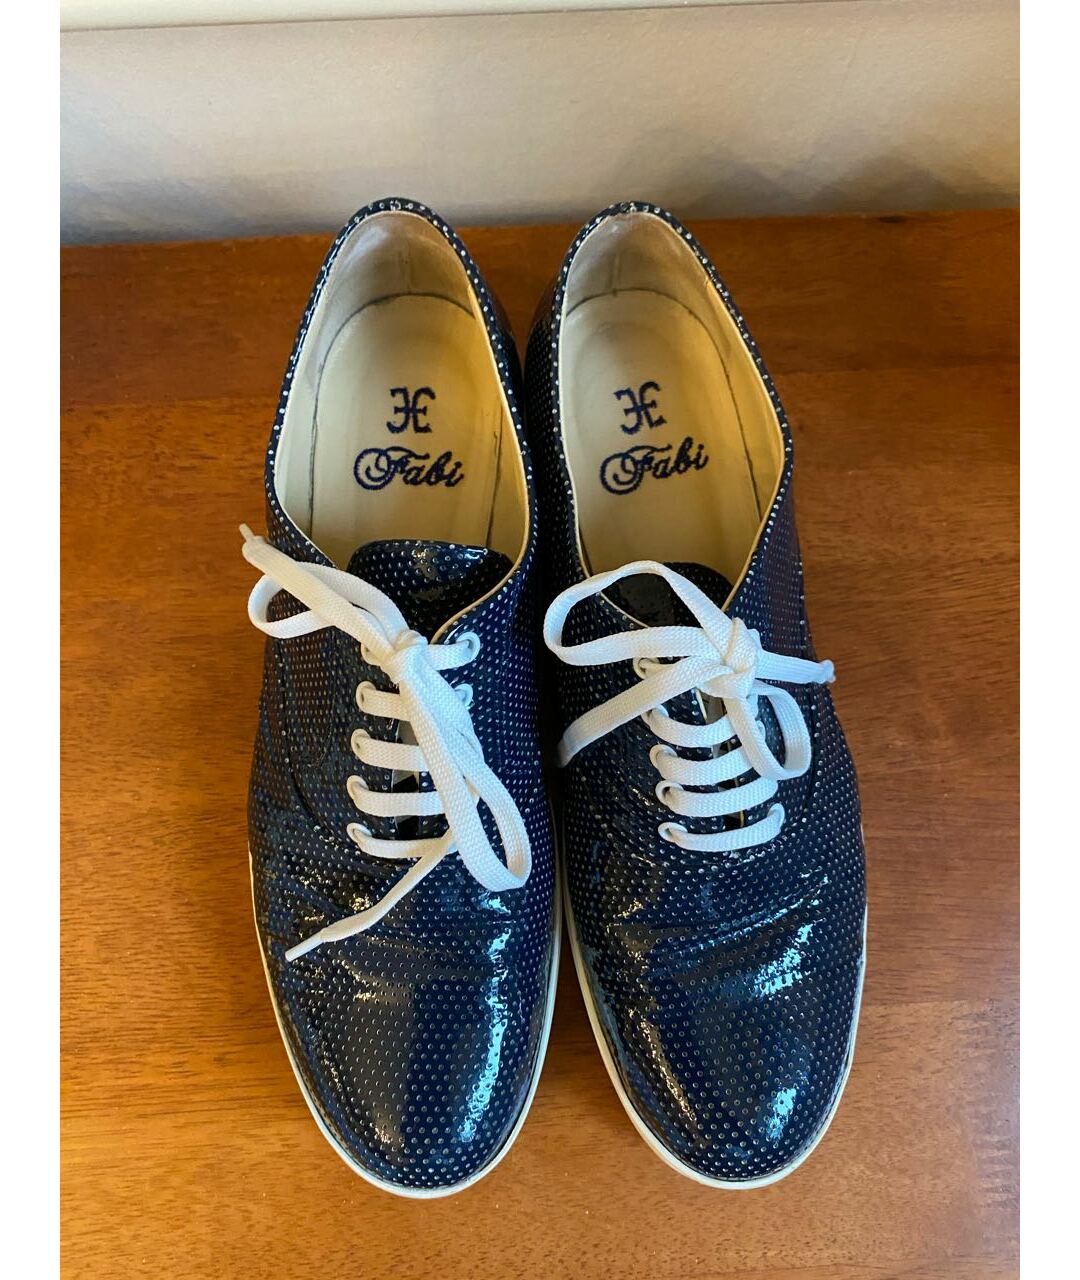 FABI Синие кожаные ботинки, фото 2